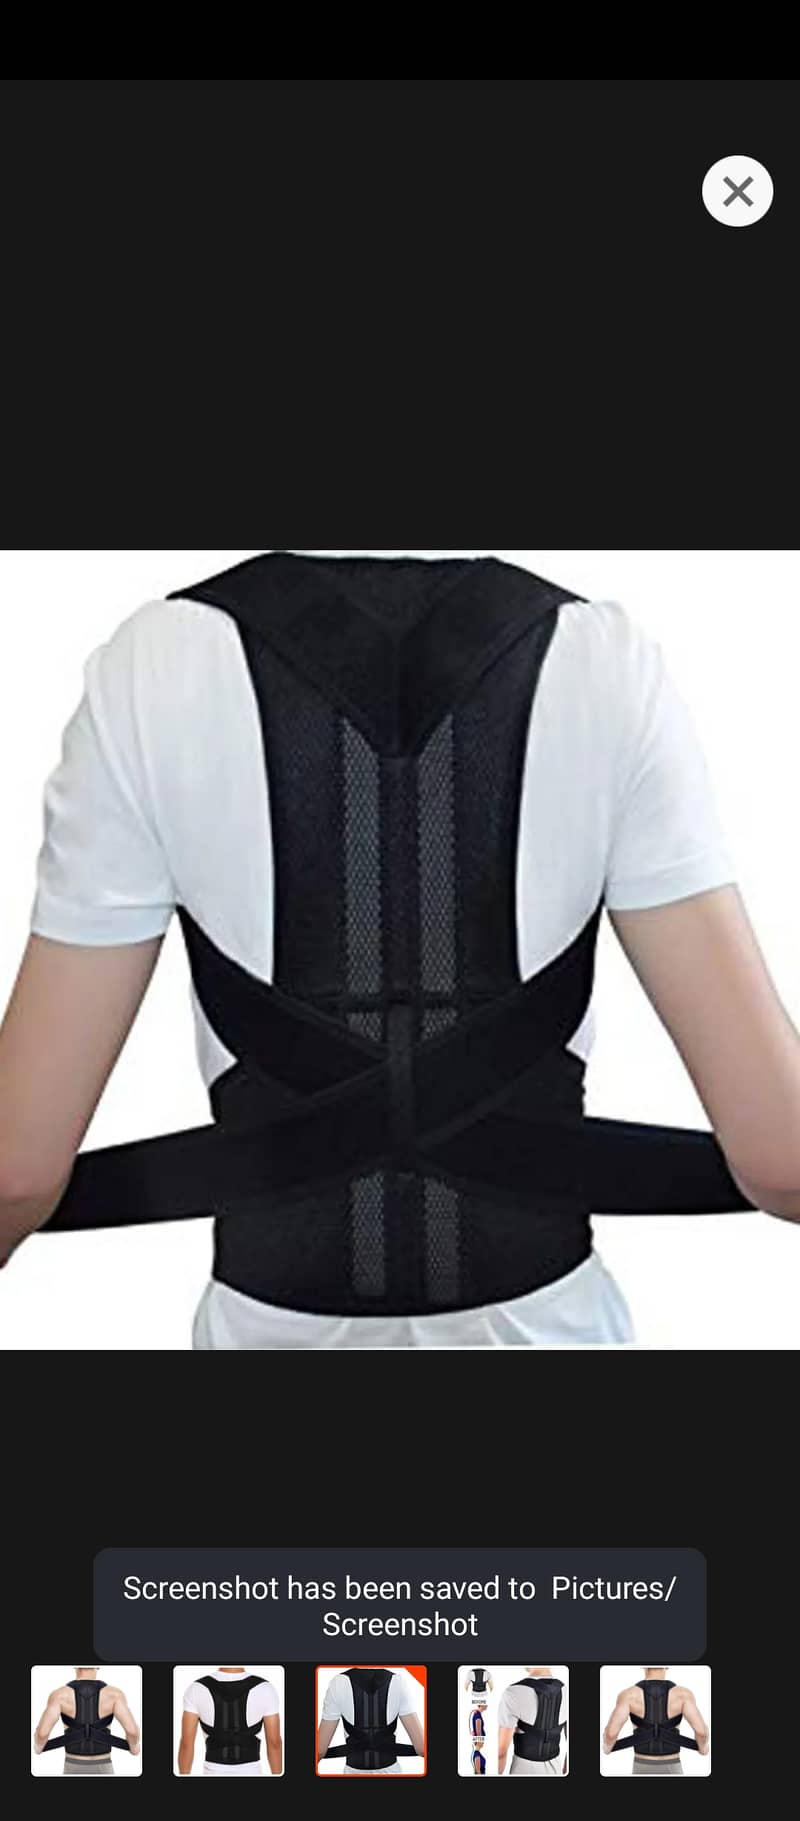 corrector belt, Back and shoulder support 0